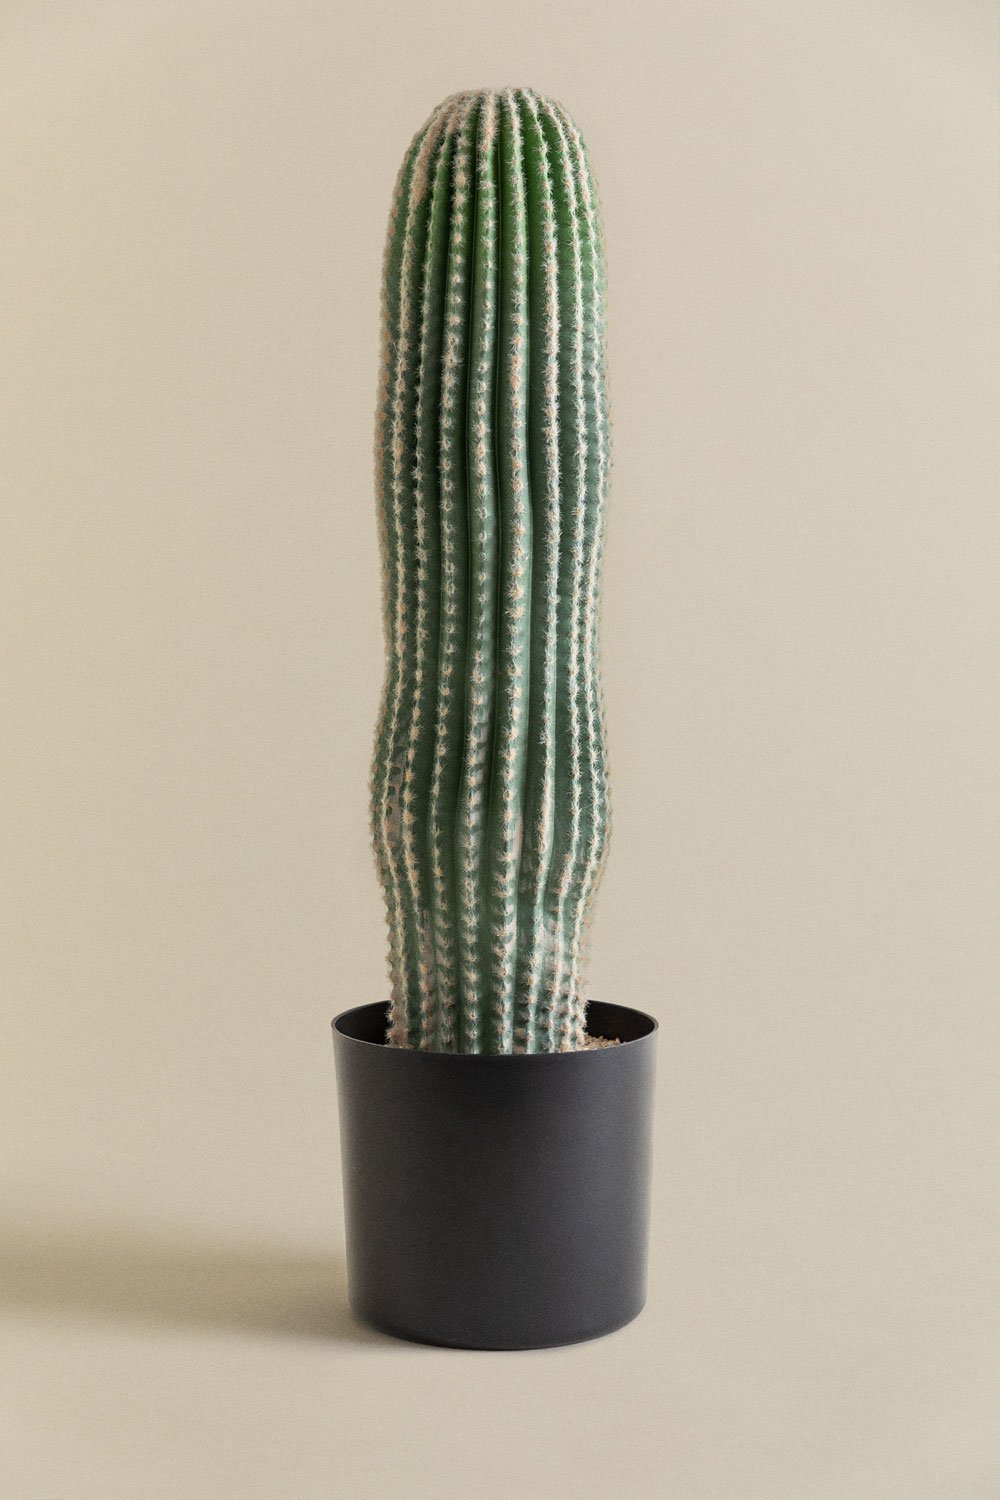 Cactus Kunst Carnegiea 72 cm, galerij beeld 1